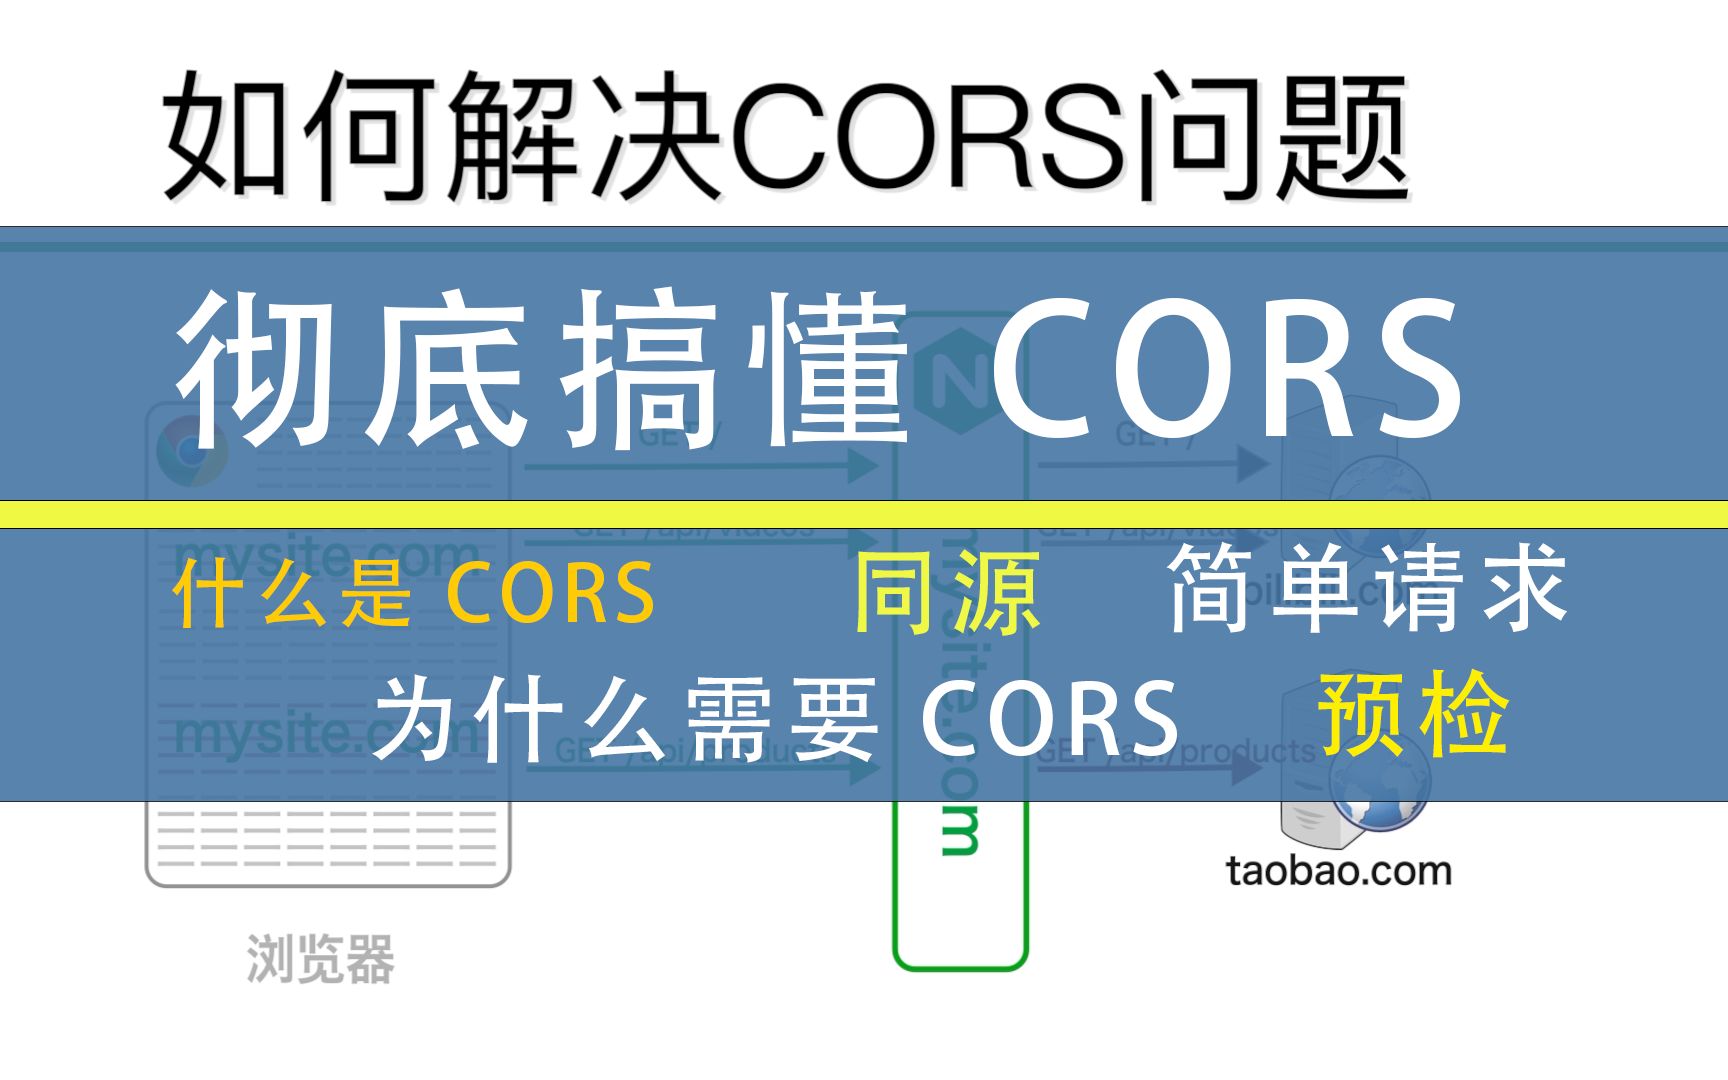 彻底搞懂CORS（跨域资源共享）相关内容 什么是CORS 为什么需要CORS 如何解决CORS问题 简单请求 预检